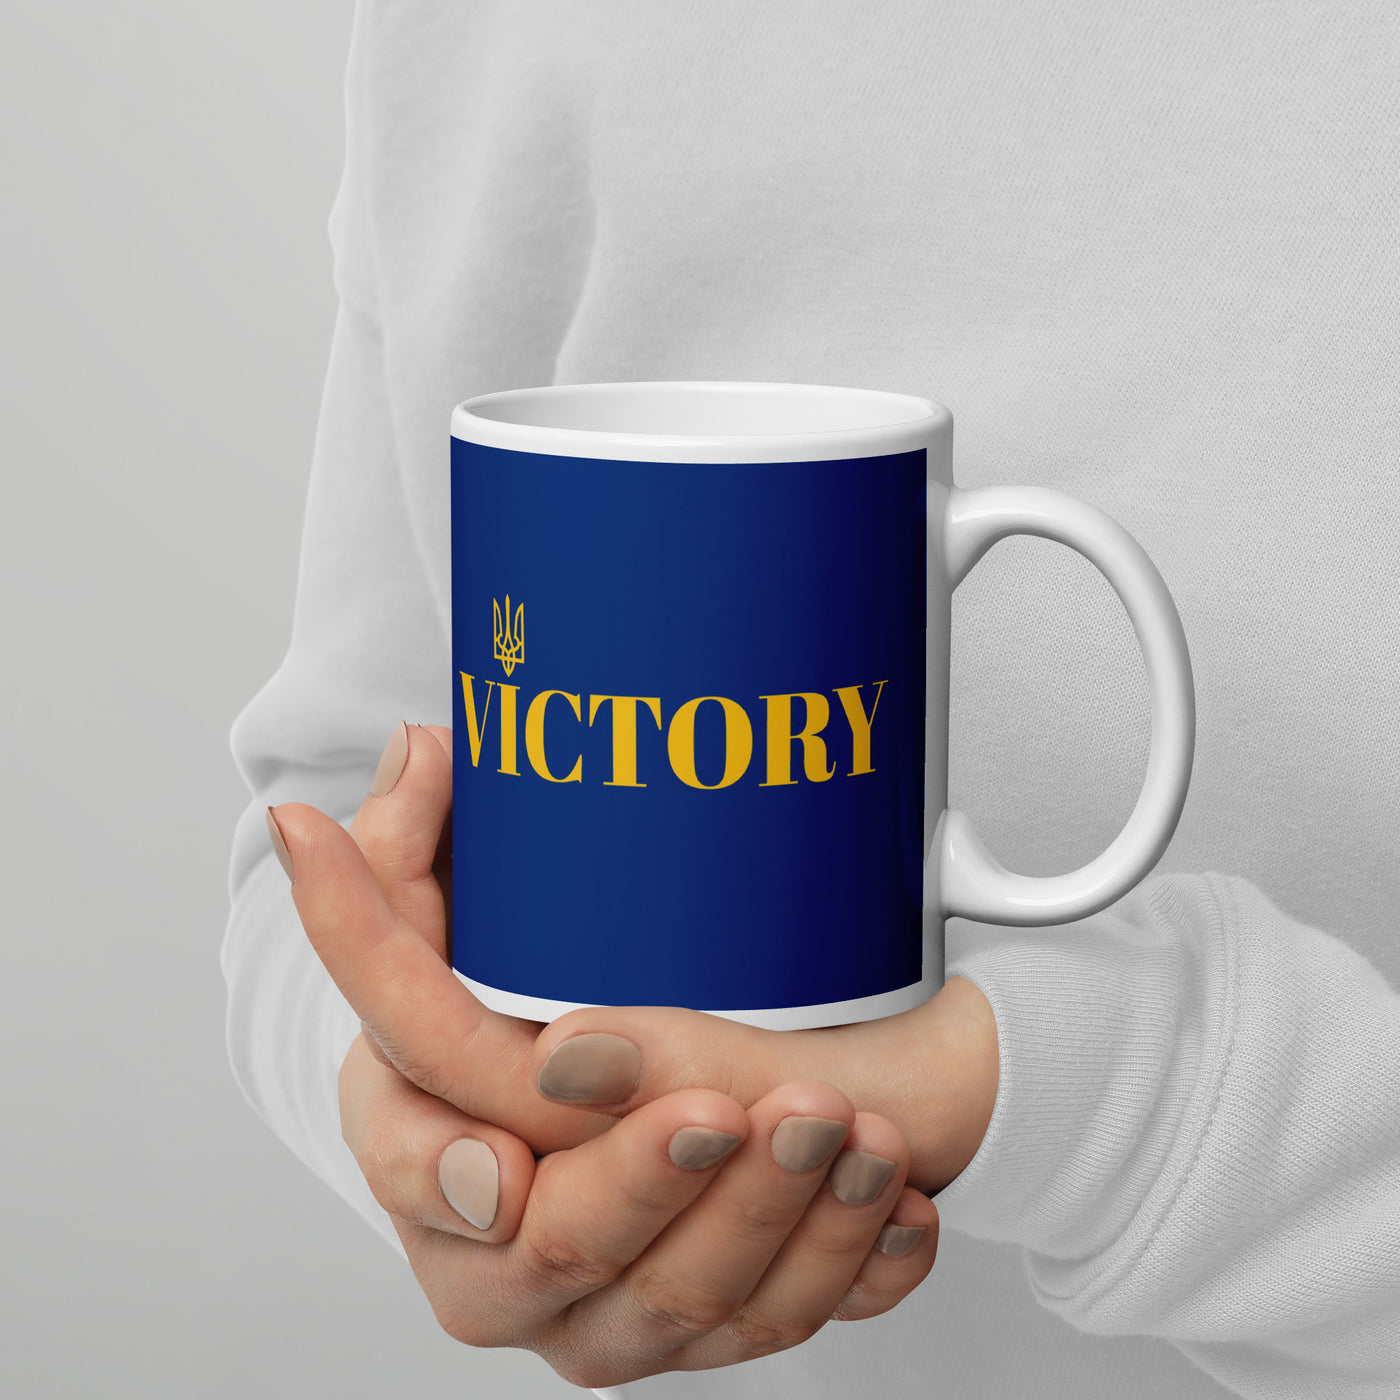 Victory mug